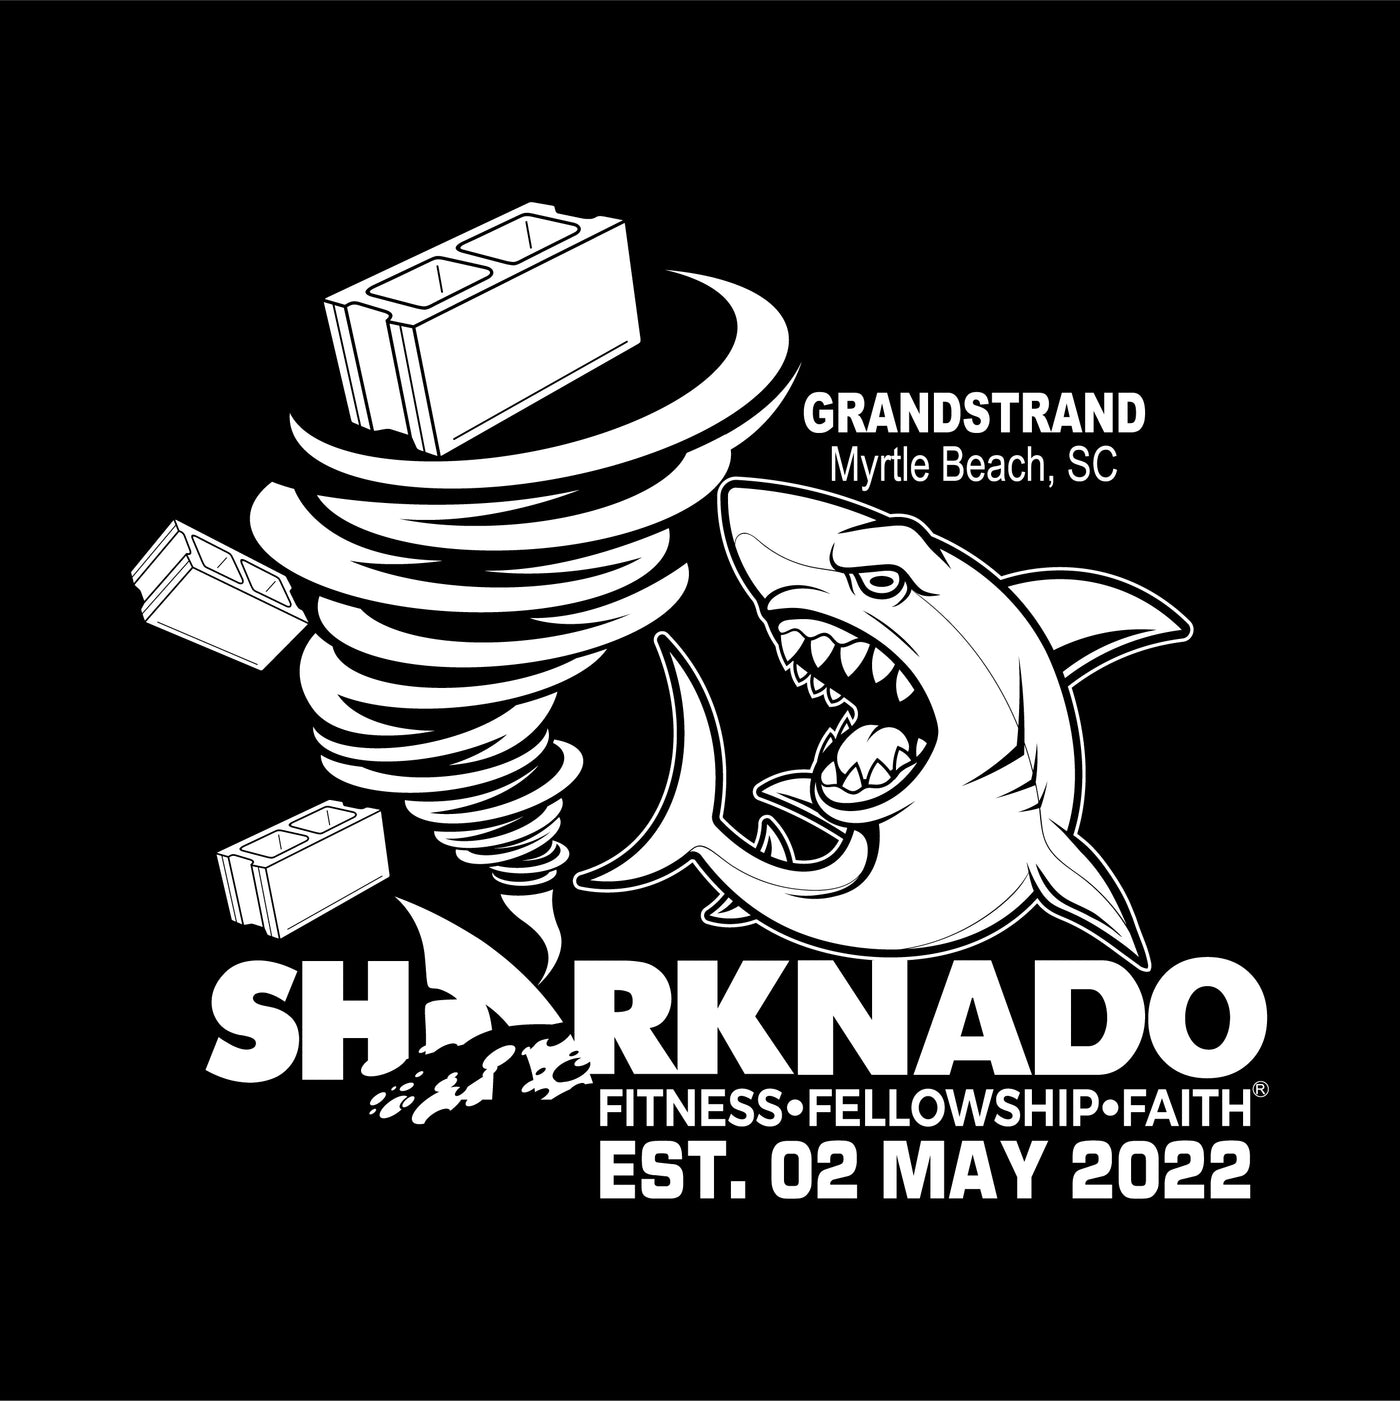 F3 Grandstrand Sharknado Pre-order December 2023